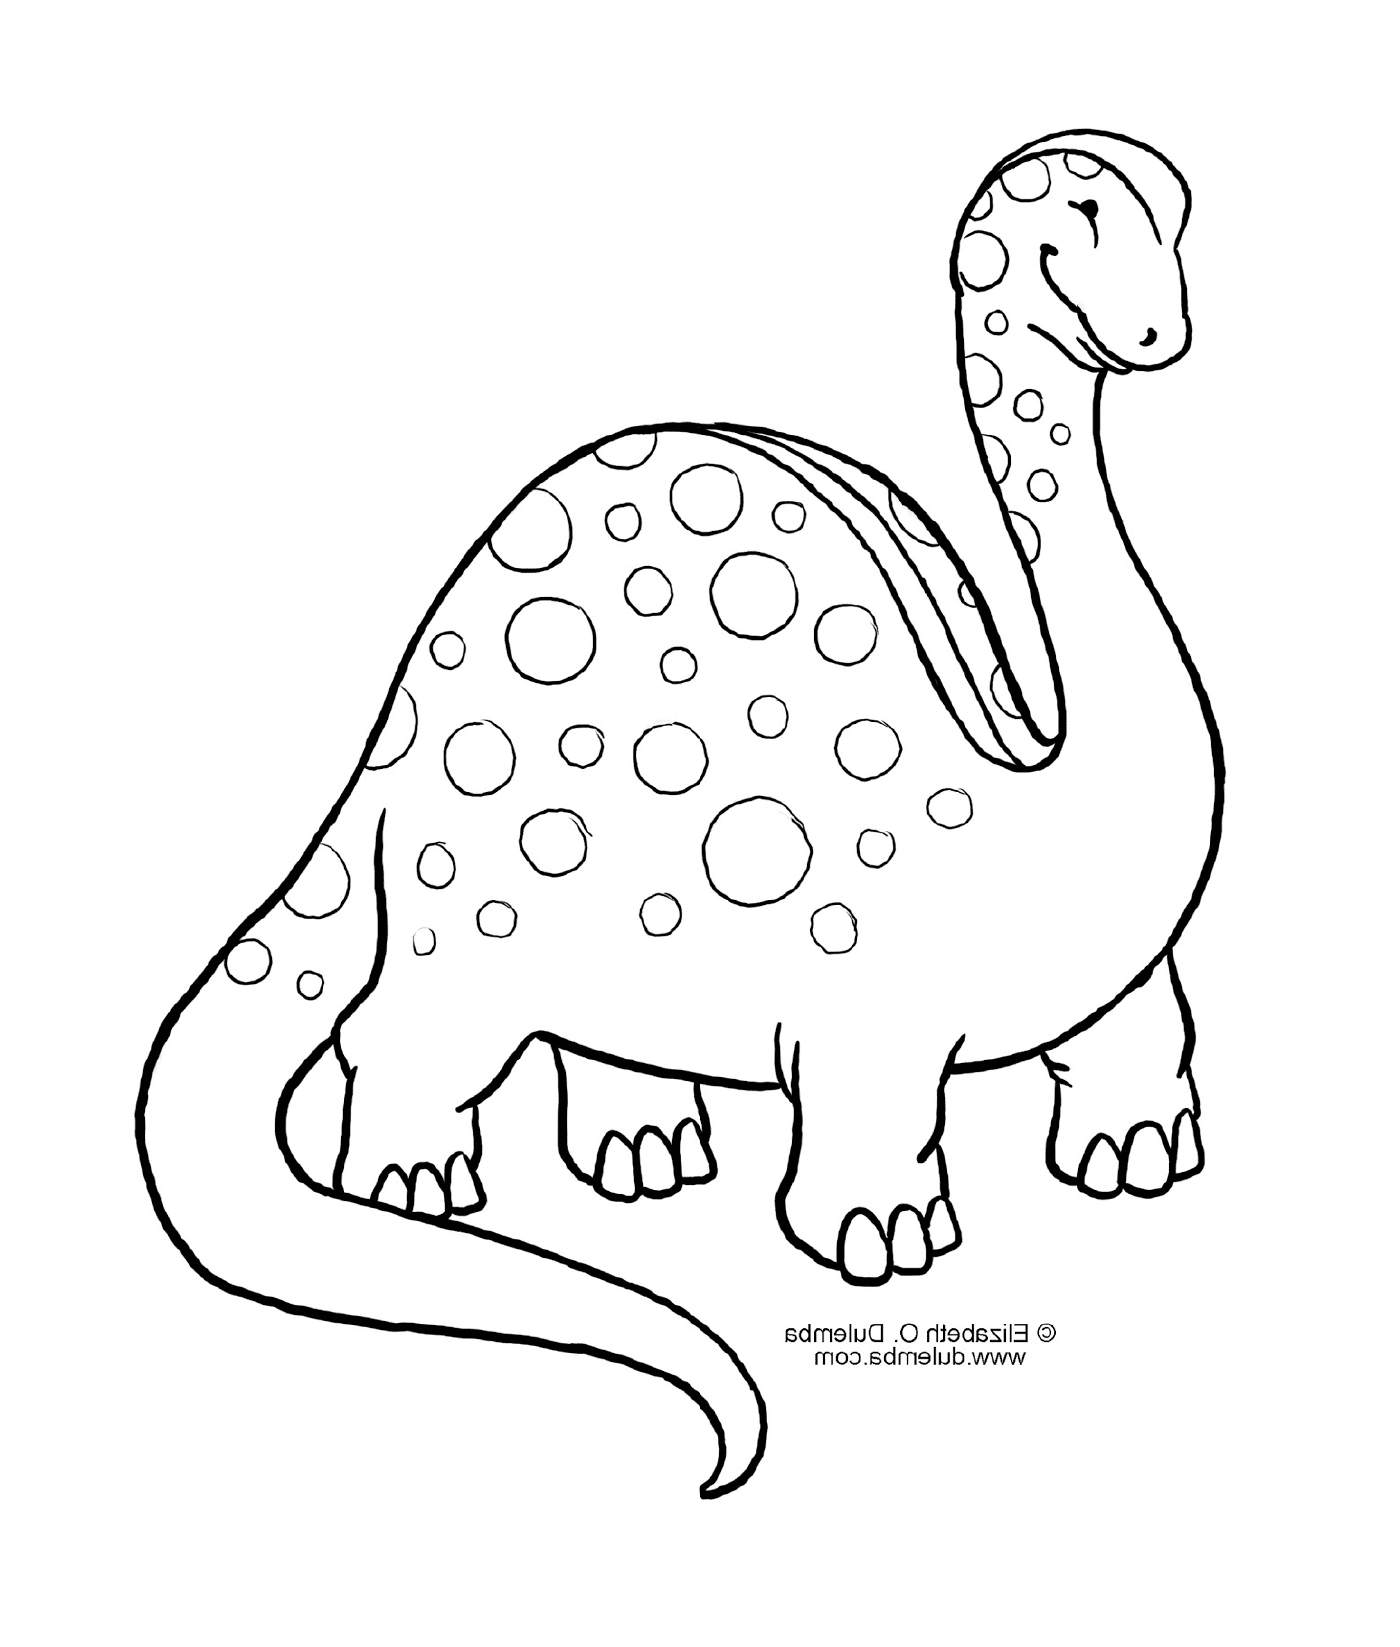  Un dinosaurio con manchas 